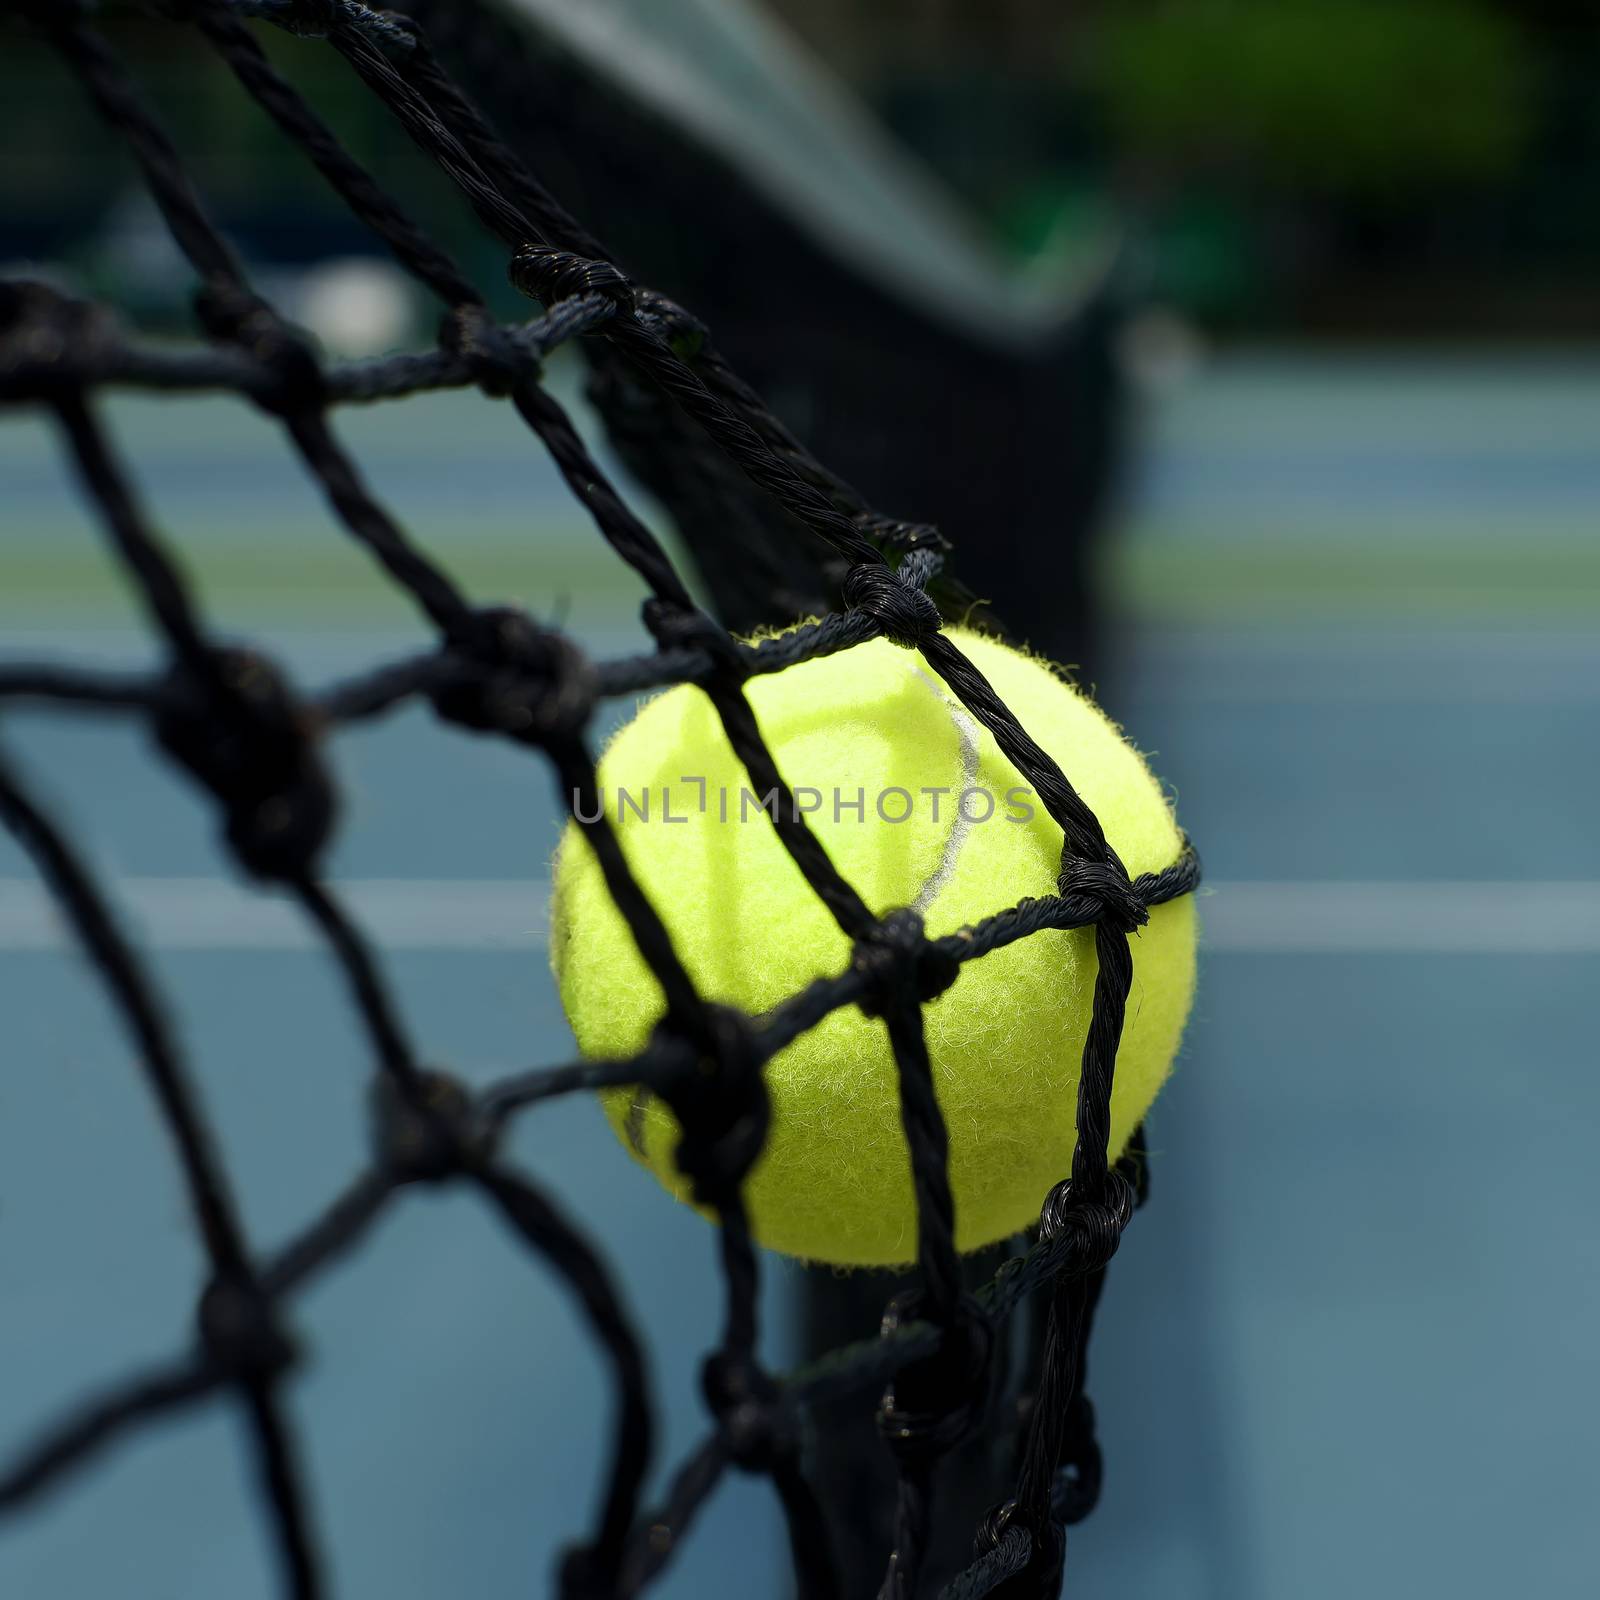 tennis ball in net by leisuretime70